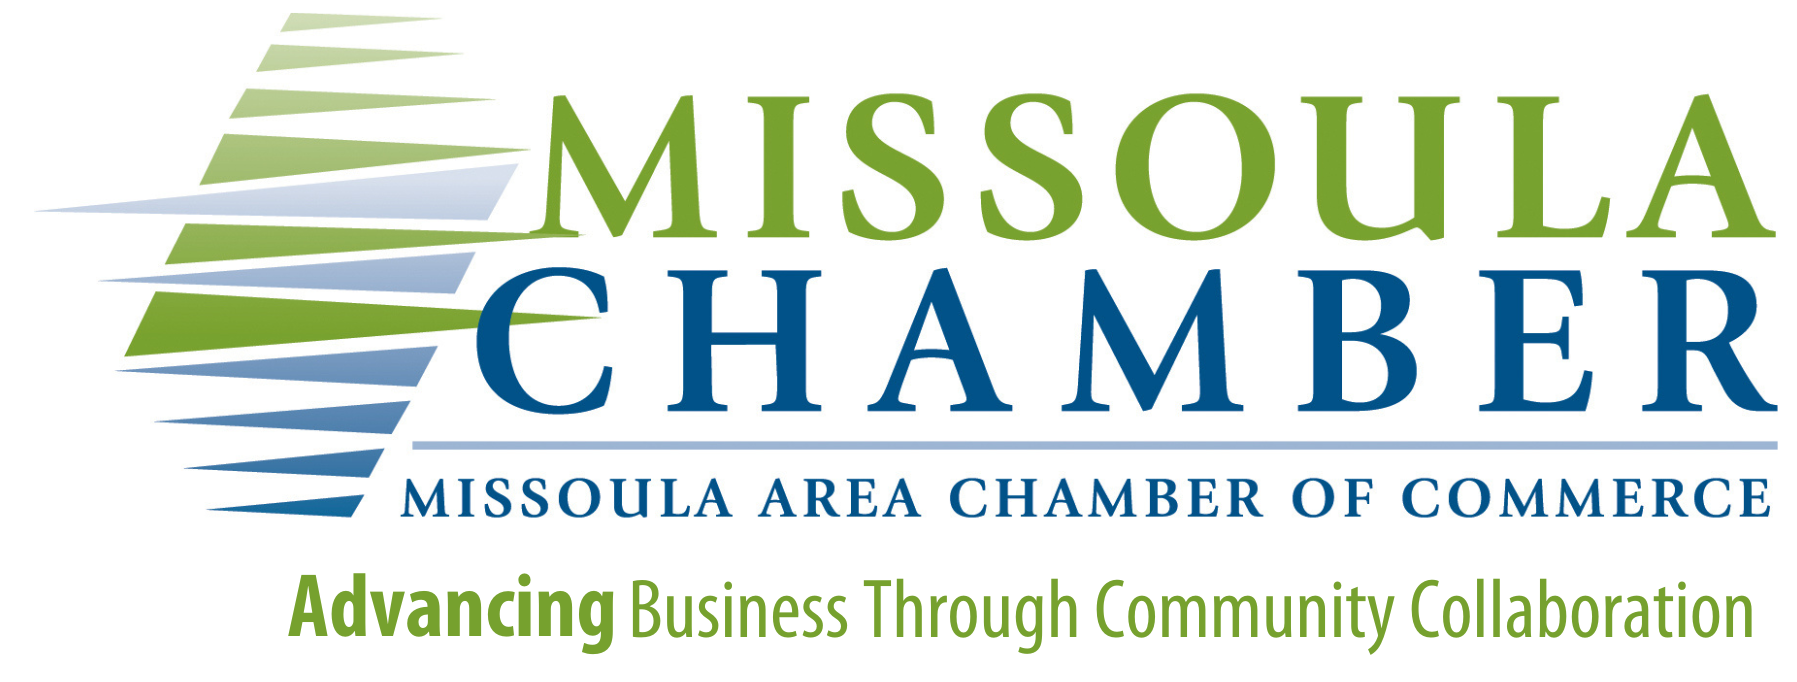 Missoula Area Chamber of Commerce